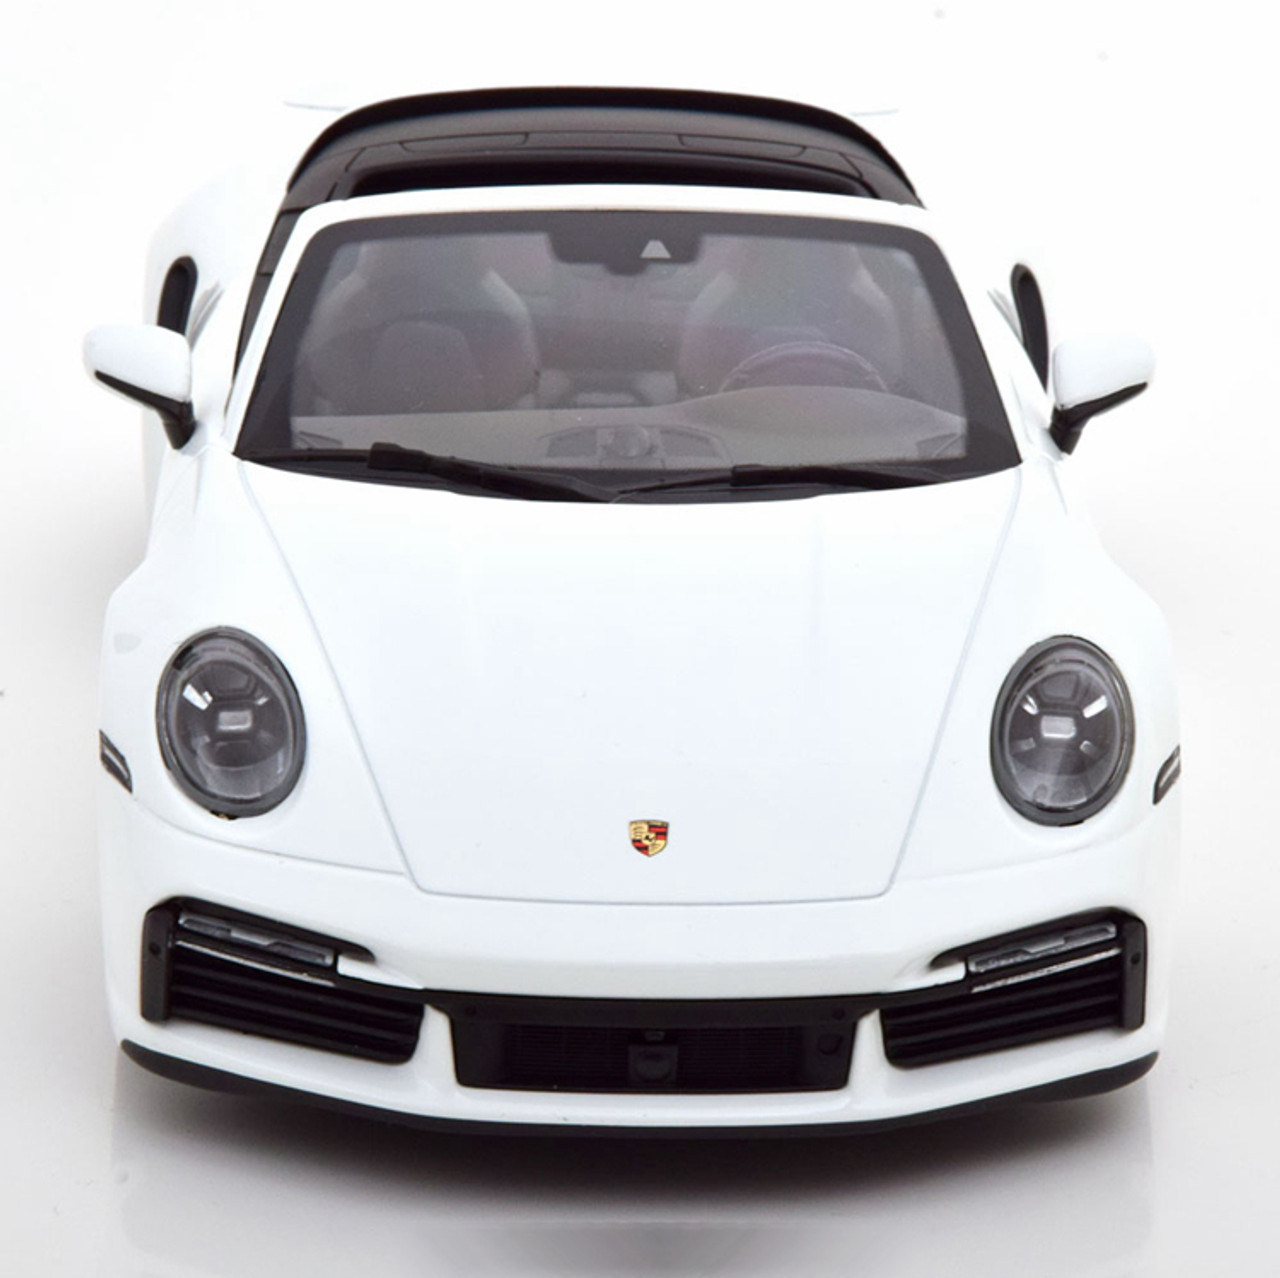 1/18 Minichamps 2020 2021 Porsche 911 Turbo S 992 Cabriolet (White) Diecast Car Model